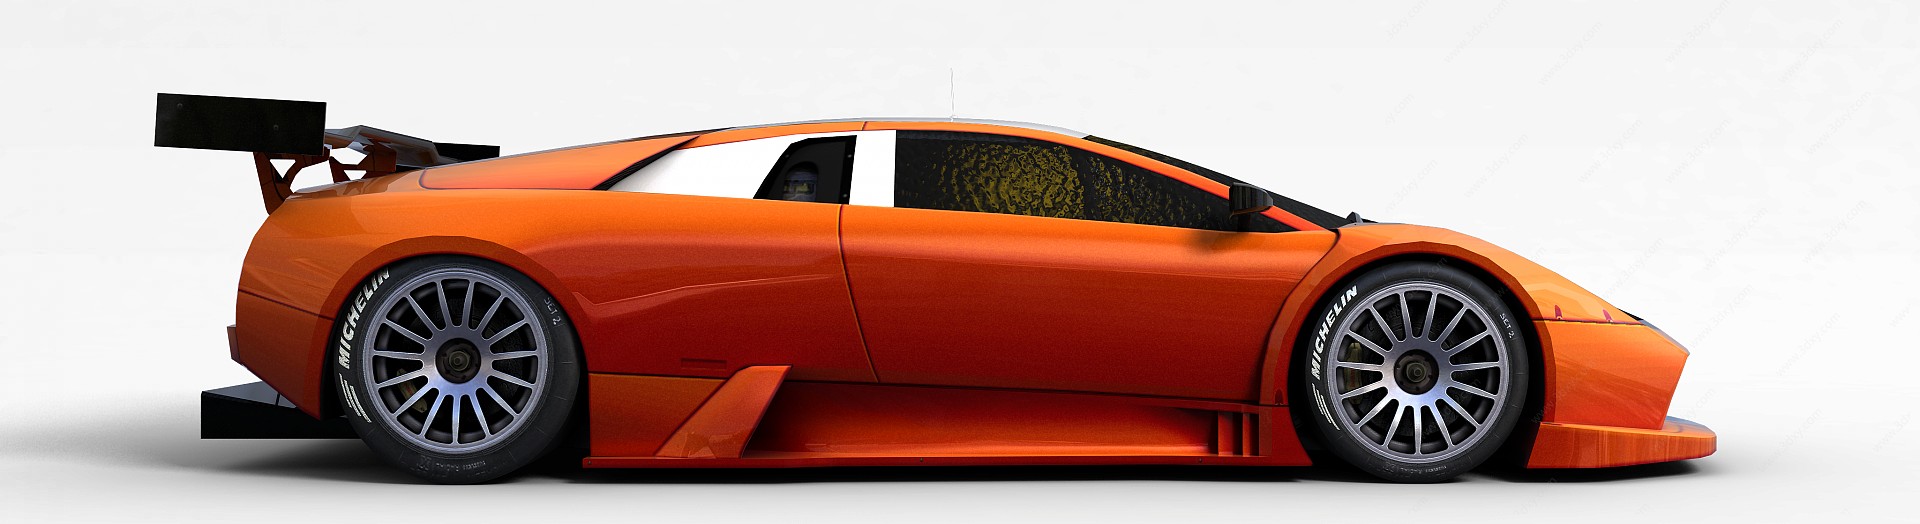 橘色兰博基尼3D模型